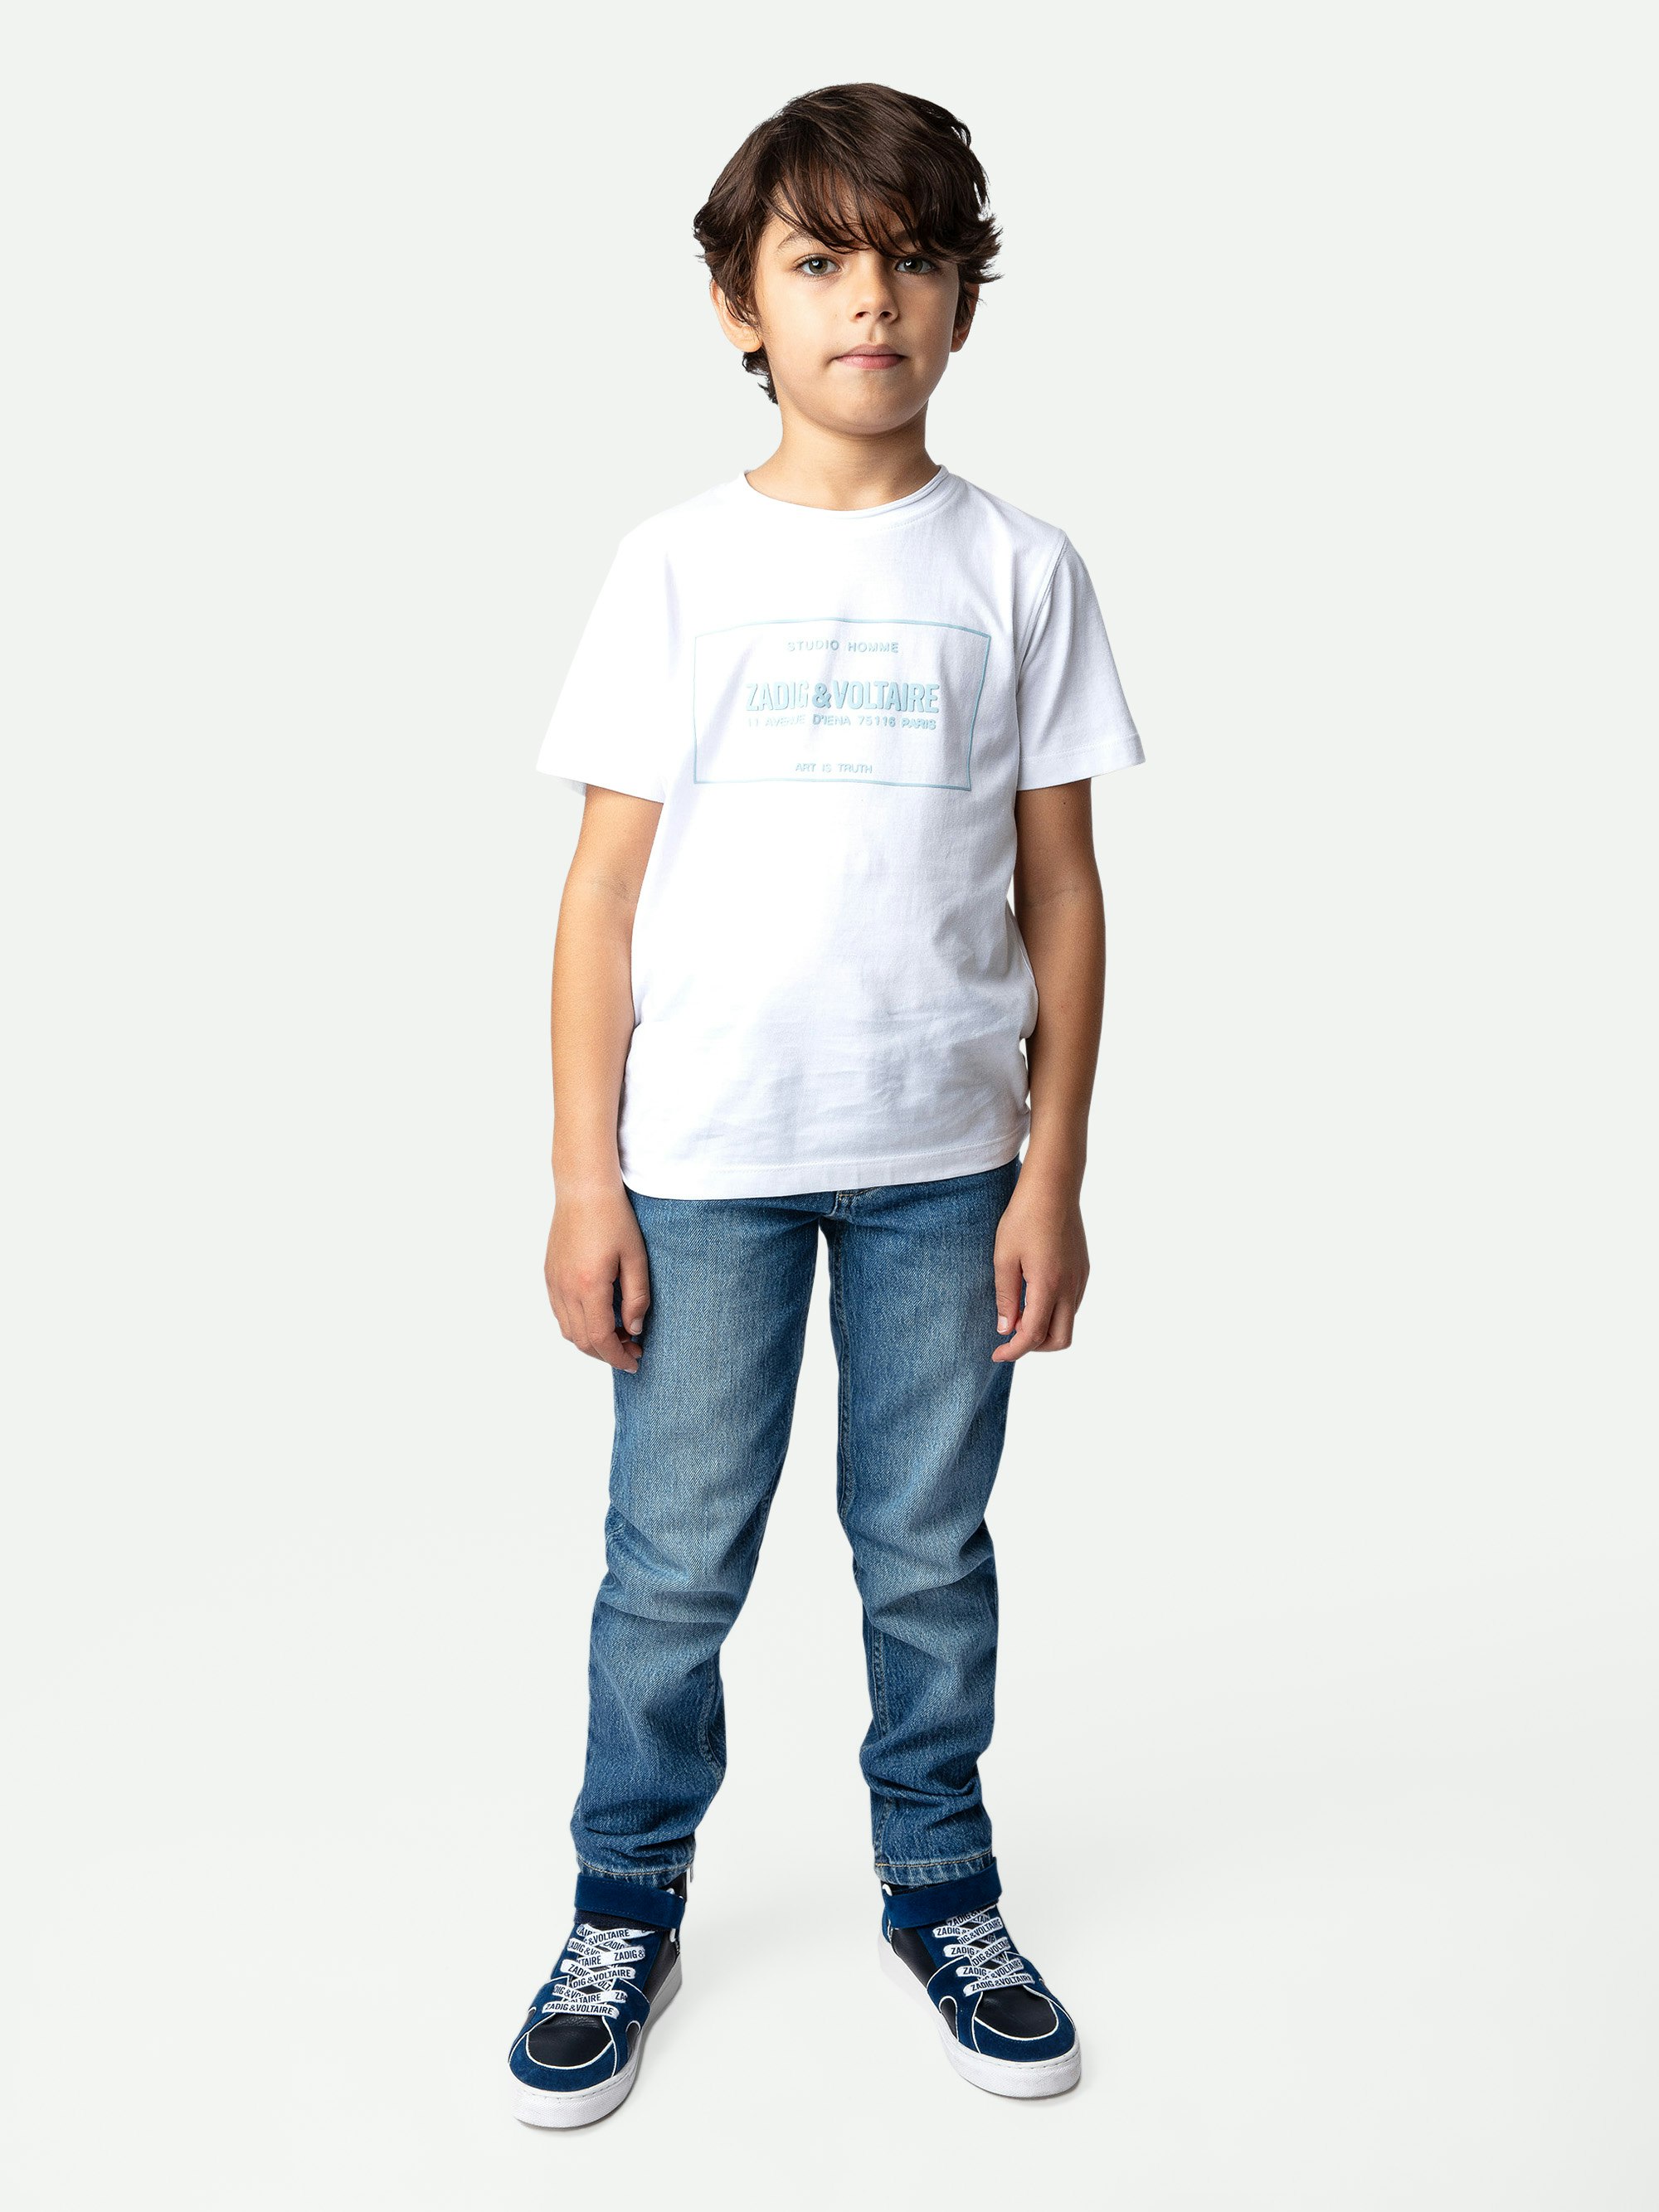 T-shirt Toby Ragazzo - T-shirt da ragazzo a maniche corte in jersey di cotone bianca decorata con stemma.